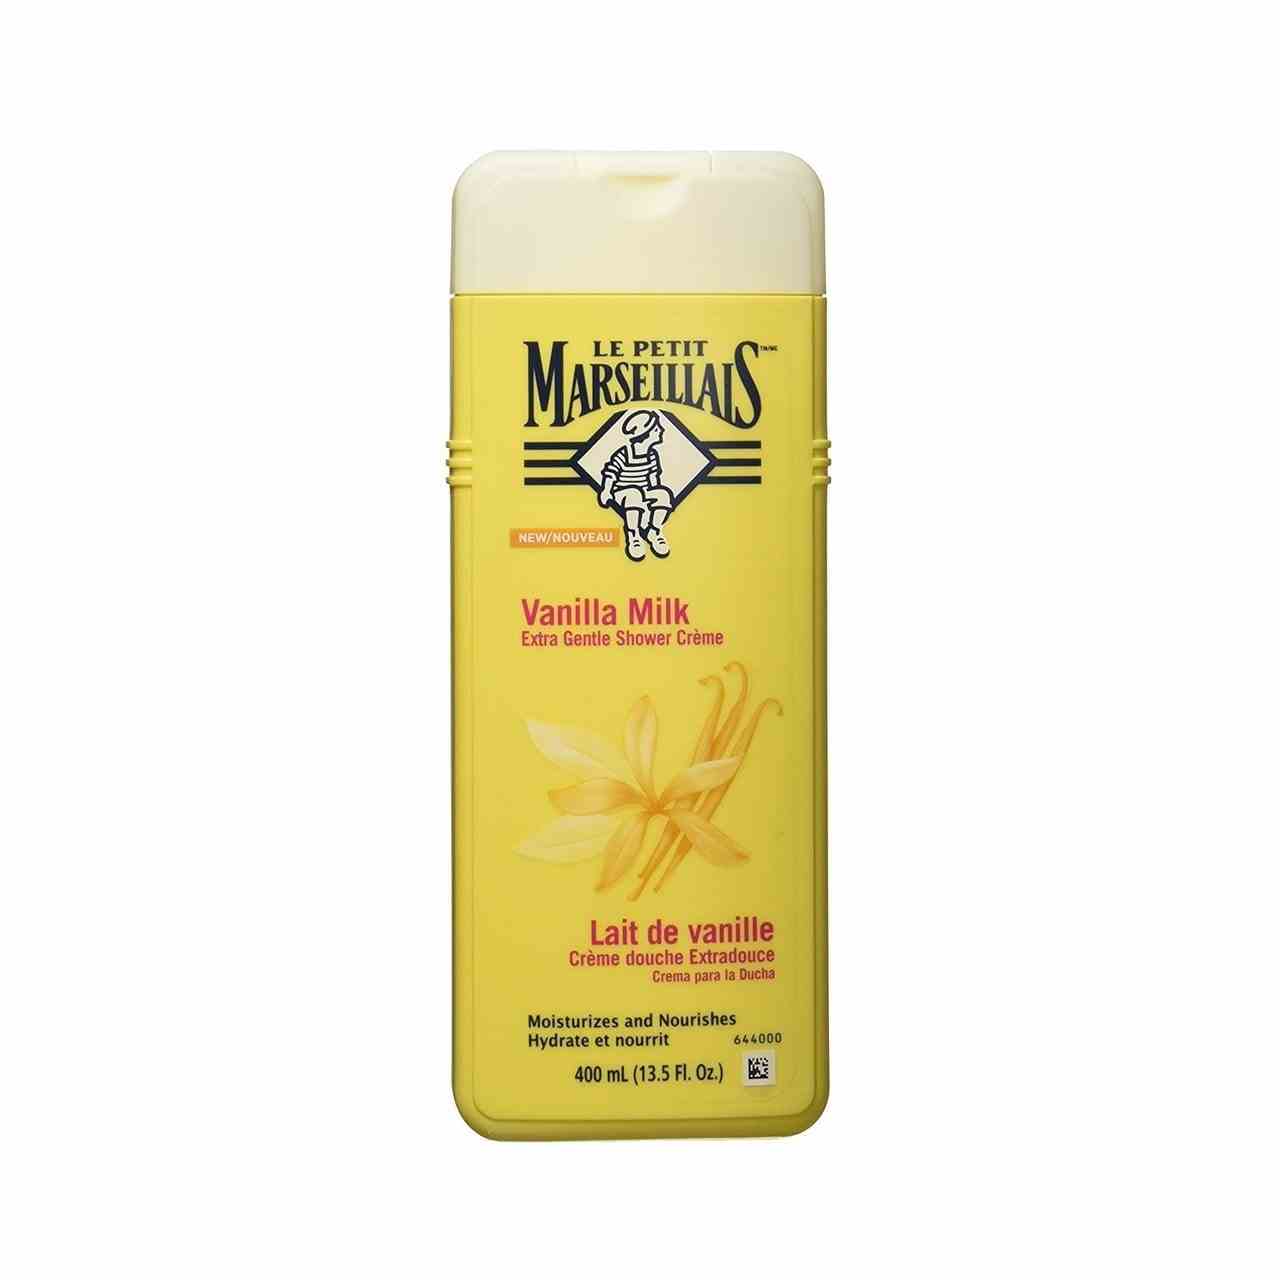 Le Petit Marseillas Extra Gentle Shower Creme gelbe Flasche auf weißem Hintergrund